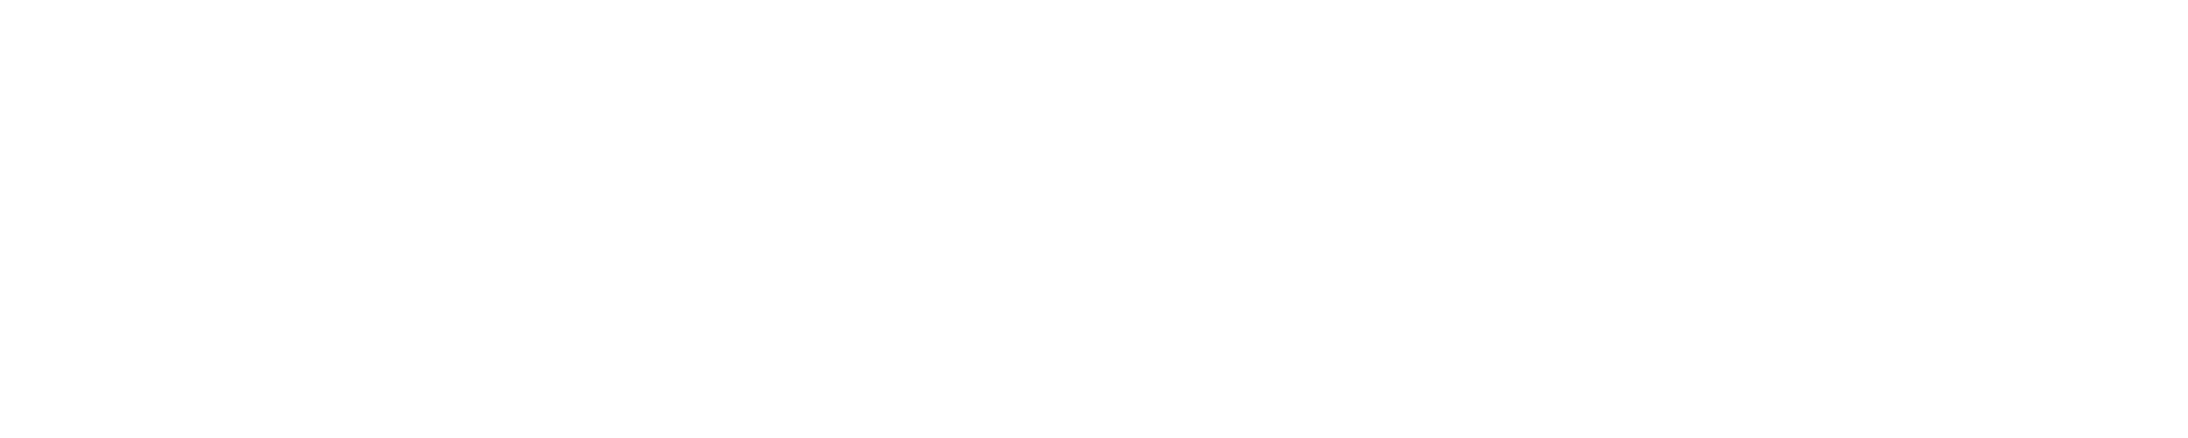 京都国際ダンスワークショップフェスティバル 2021